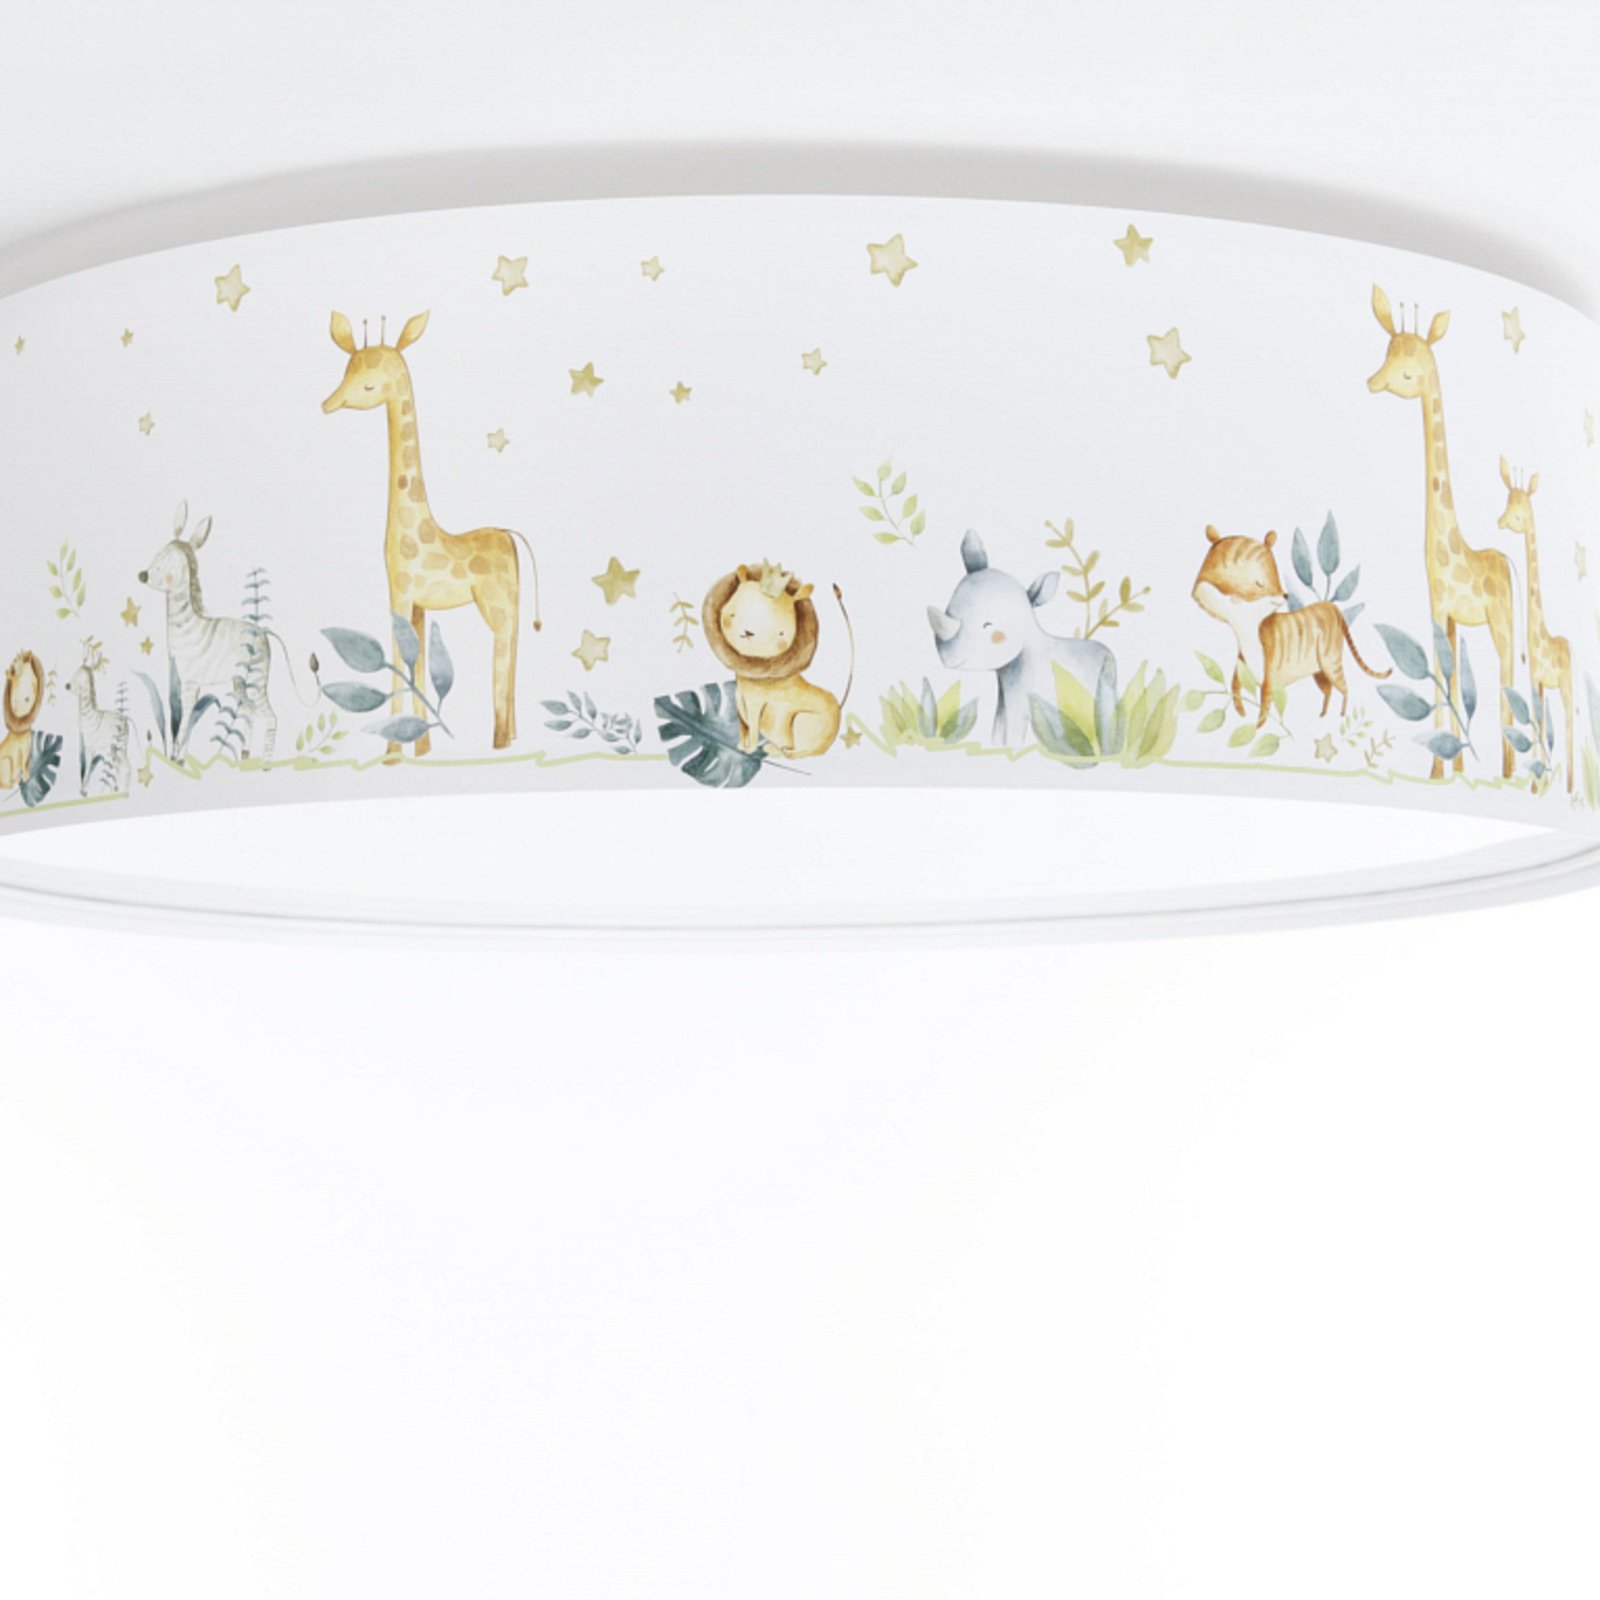 Max children's ceiling light, Ø 50 cm